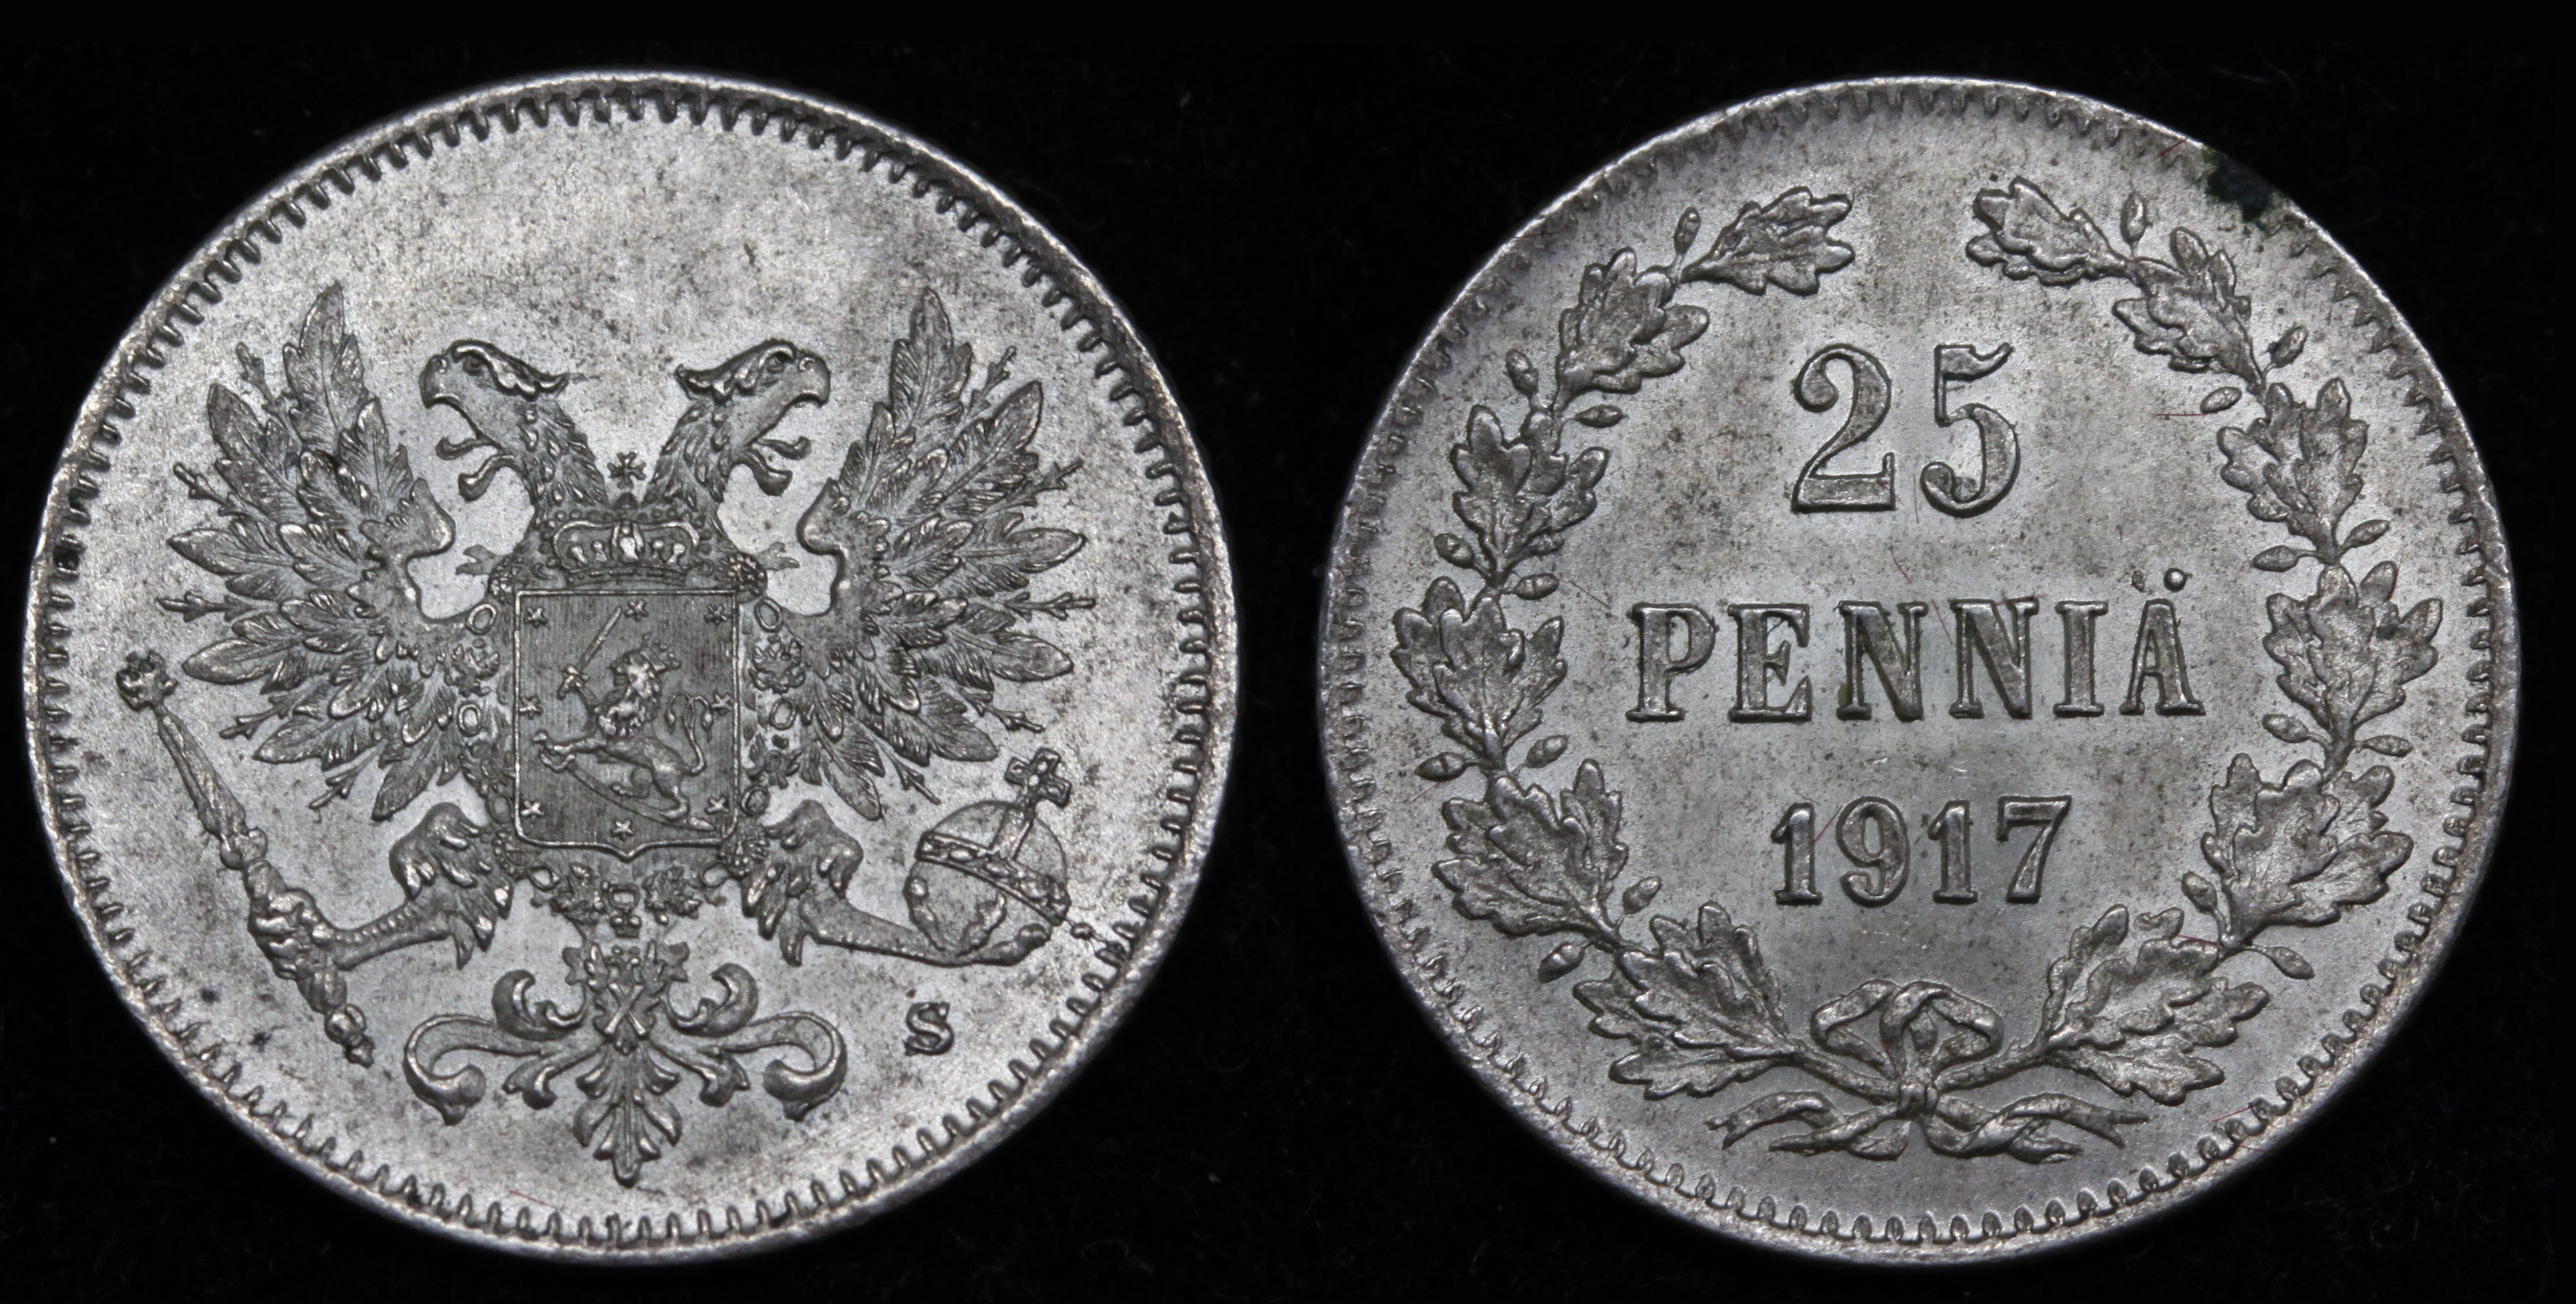 25 пенни 1917 год "S" (без короны)